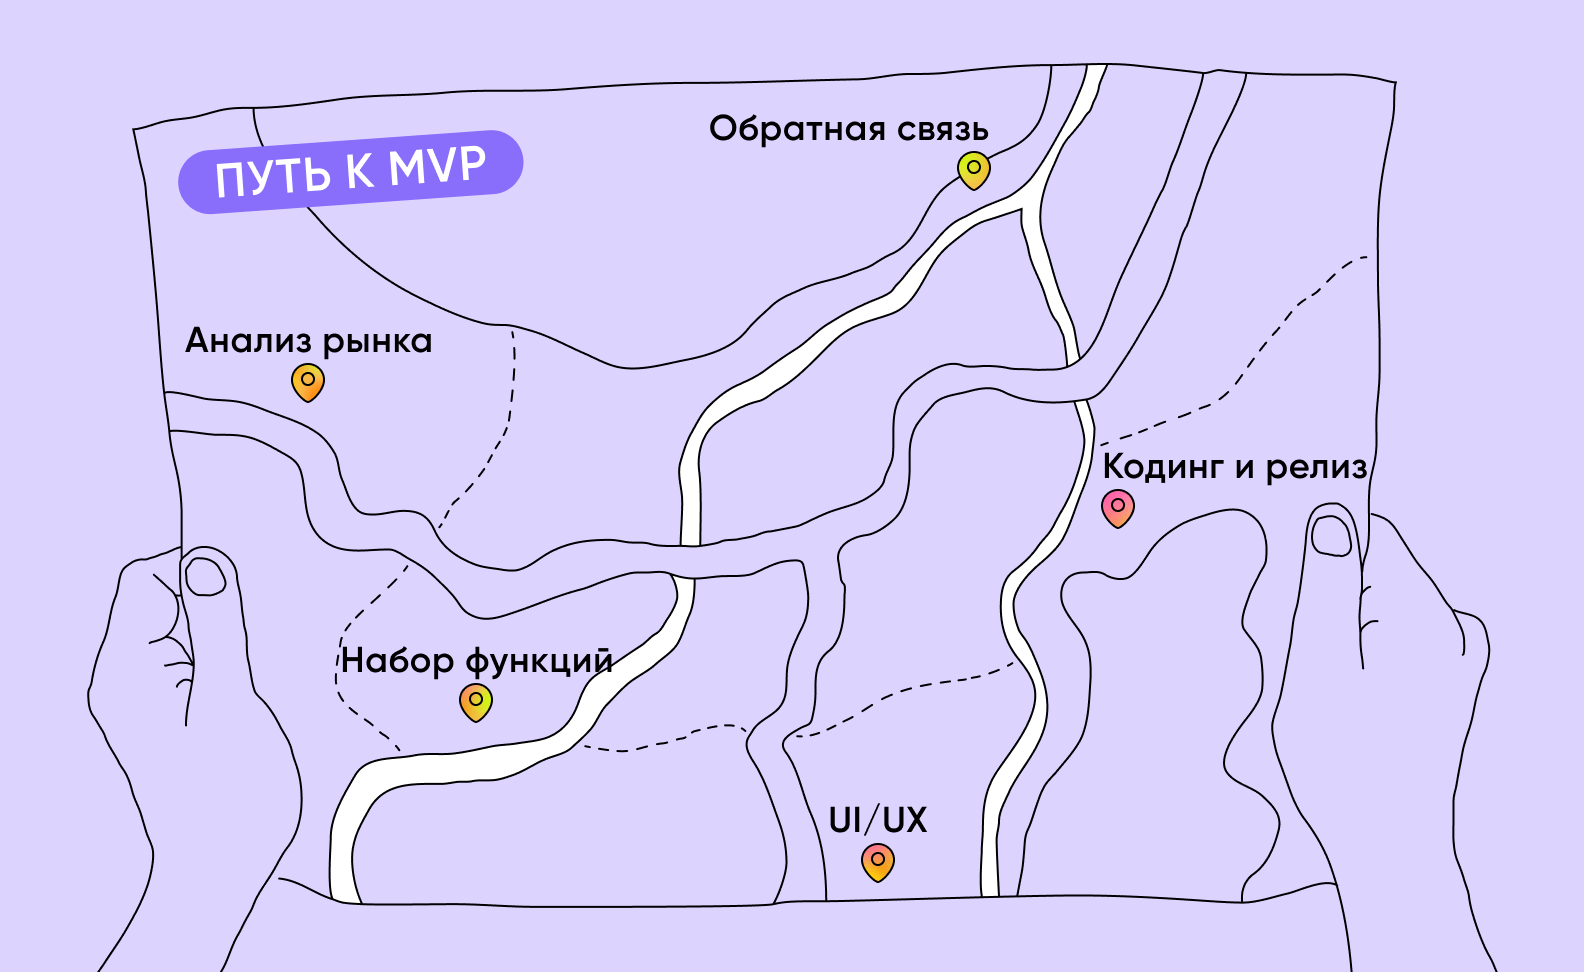  Дорожная карта MVP